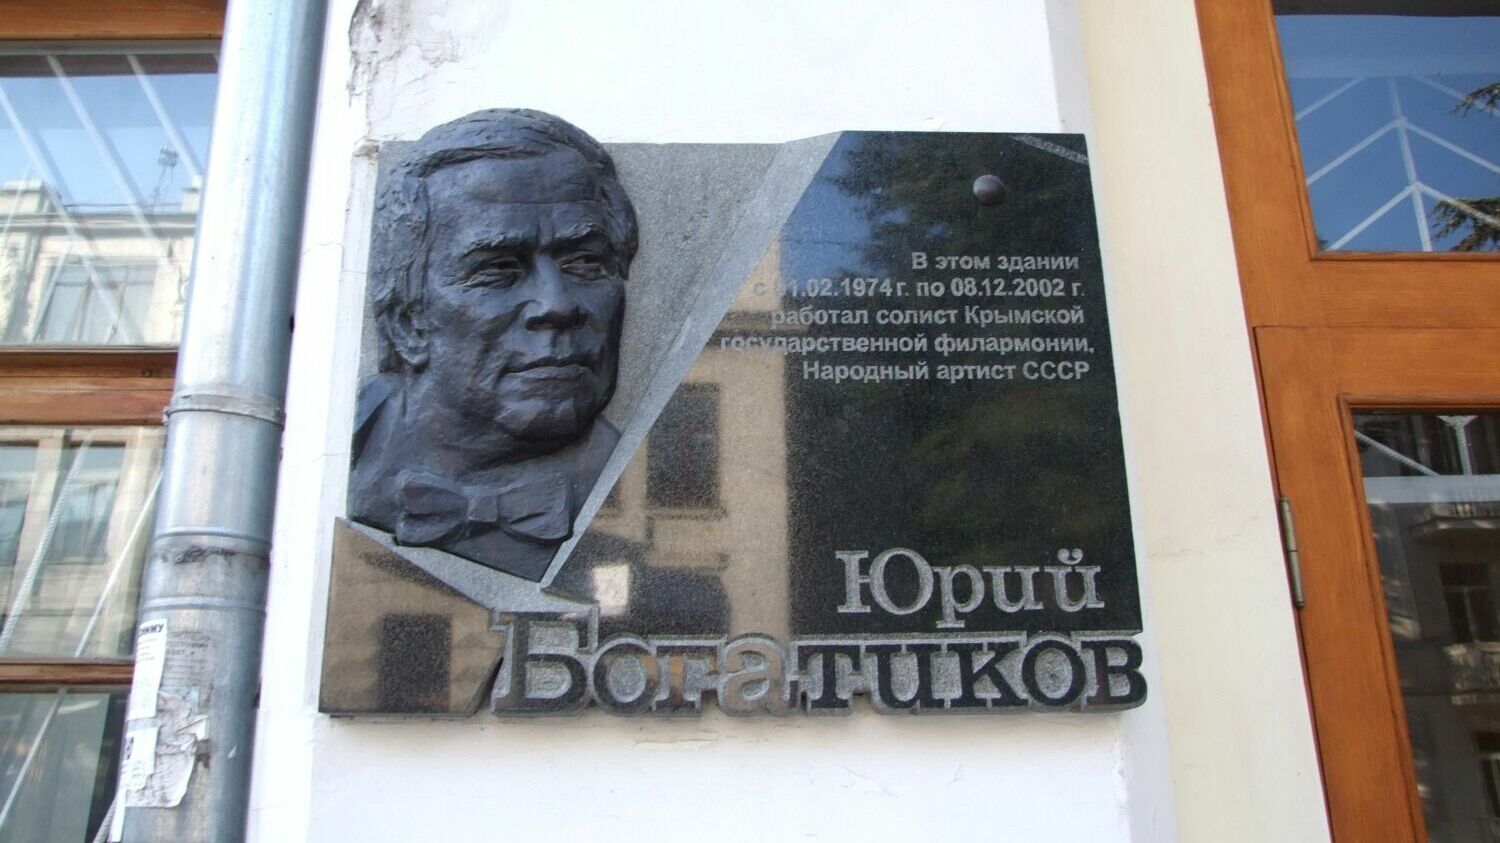 На здании Крымской государственной филармонии размещена мемориальная доска Народному артисту СССР Юрию Богатикову, бывшему солистом филармонии с 1974 по 2002 год.